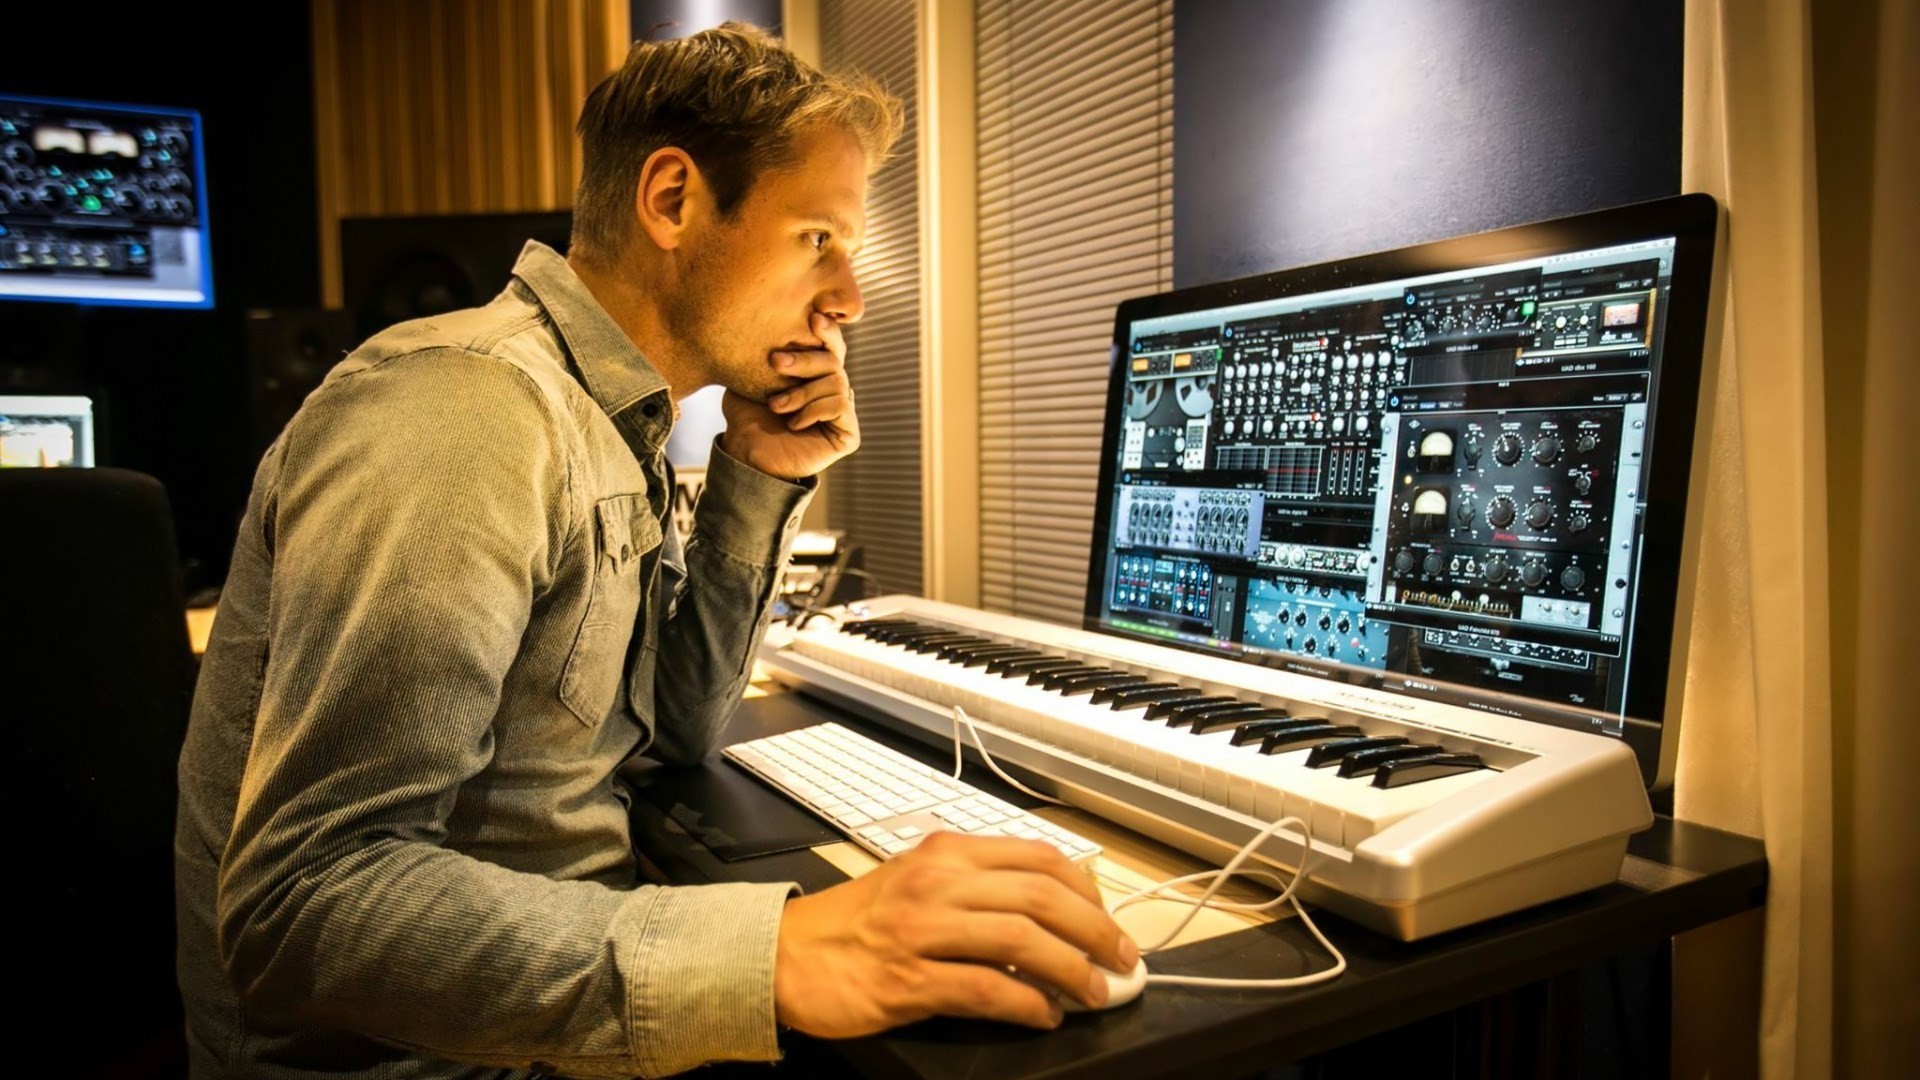 Включи музыкальную станцию. Студия Армина Ван Бюрена. Armin van Buuren в студии. Армин музыкант. Студия композитора.